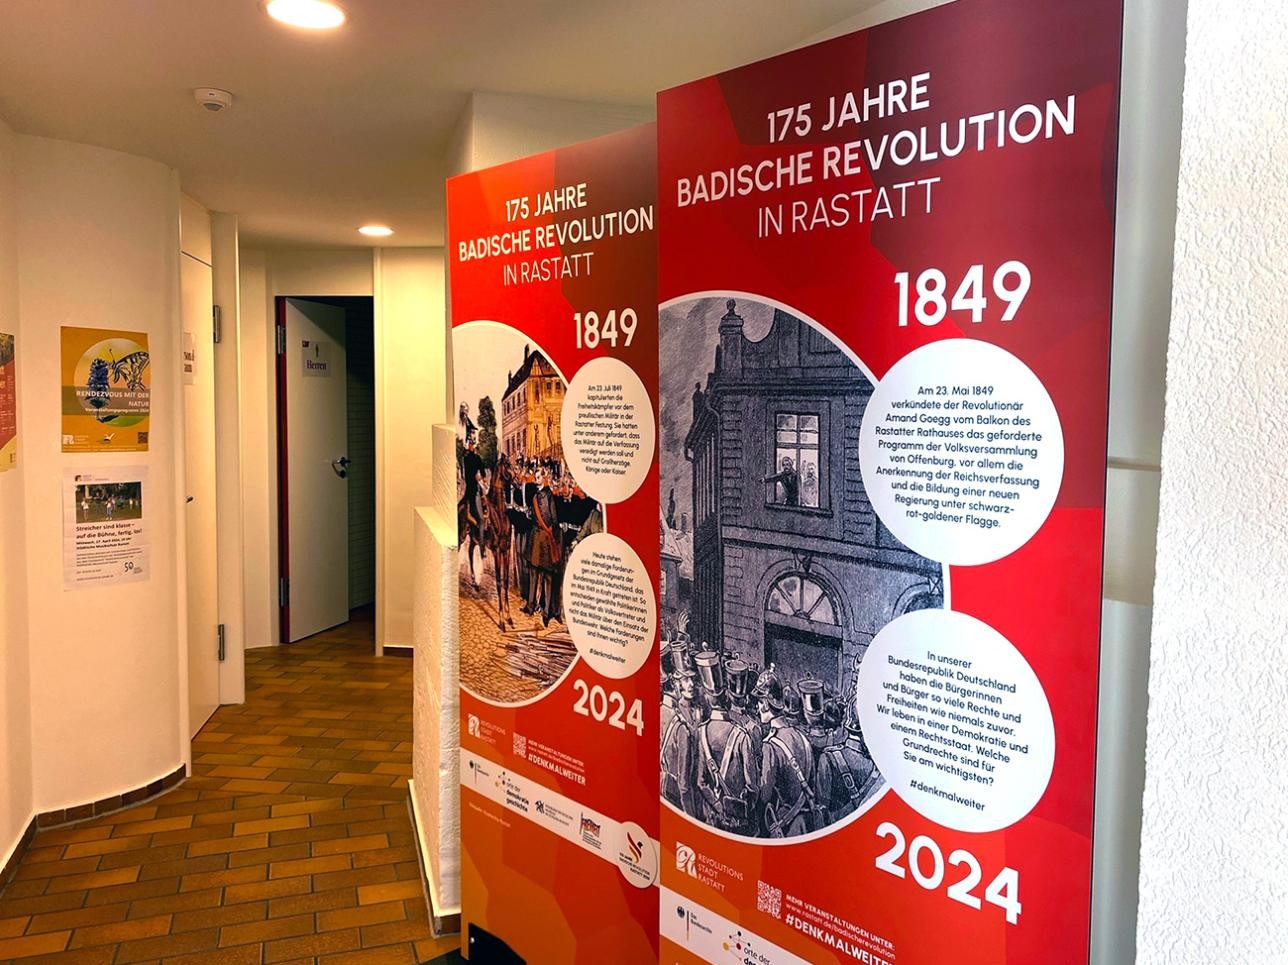 Panneau d'information à l'office de tourisme sur les 175 ans de la Révolution badoise